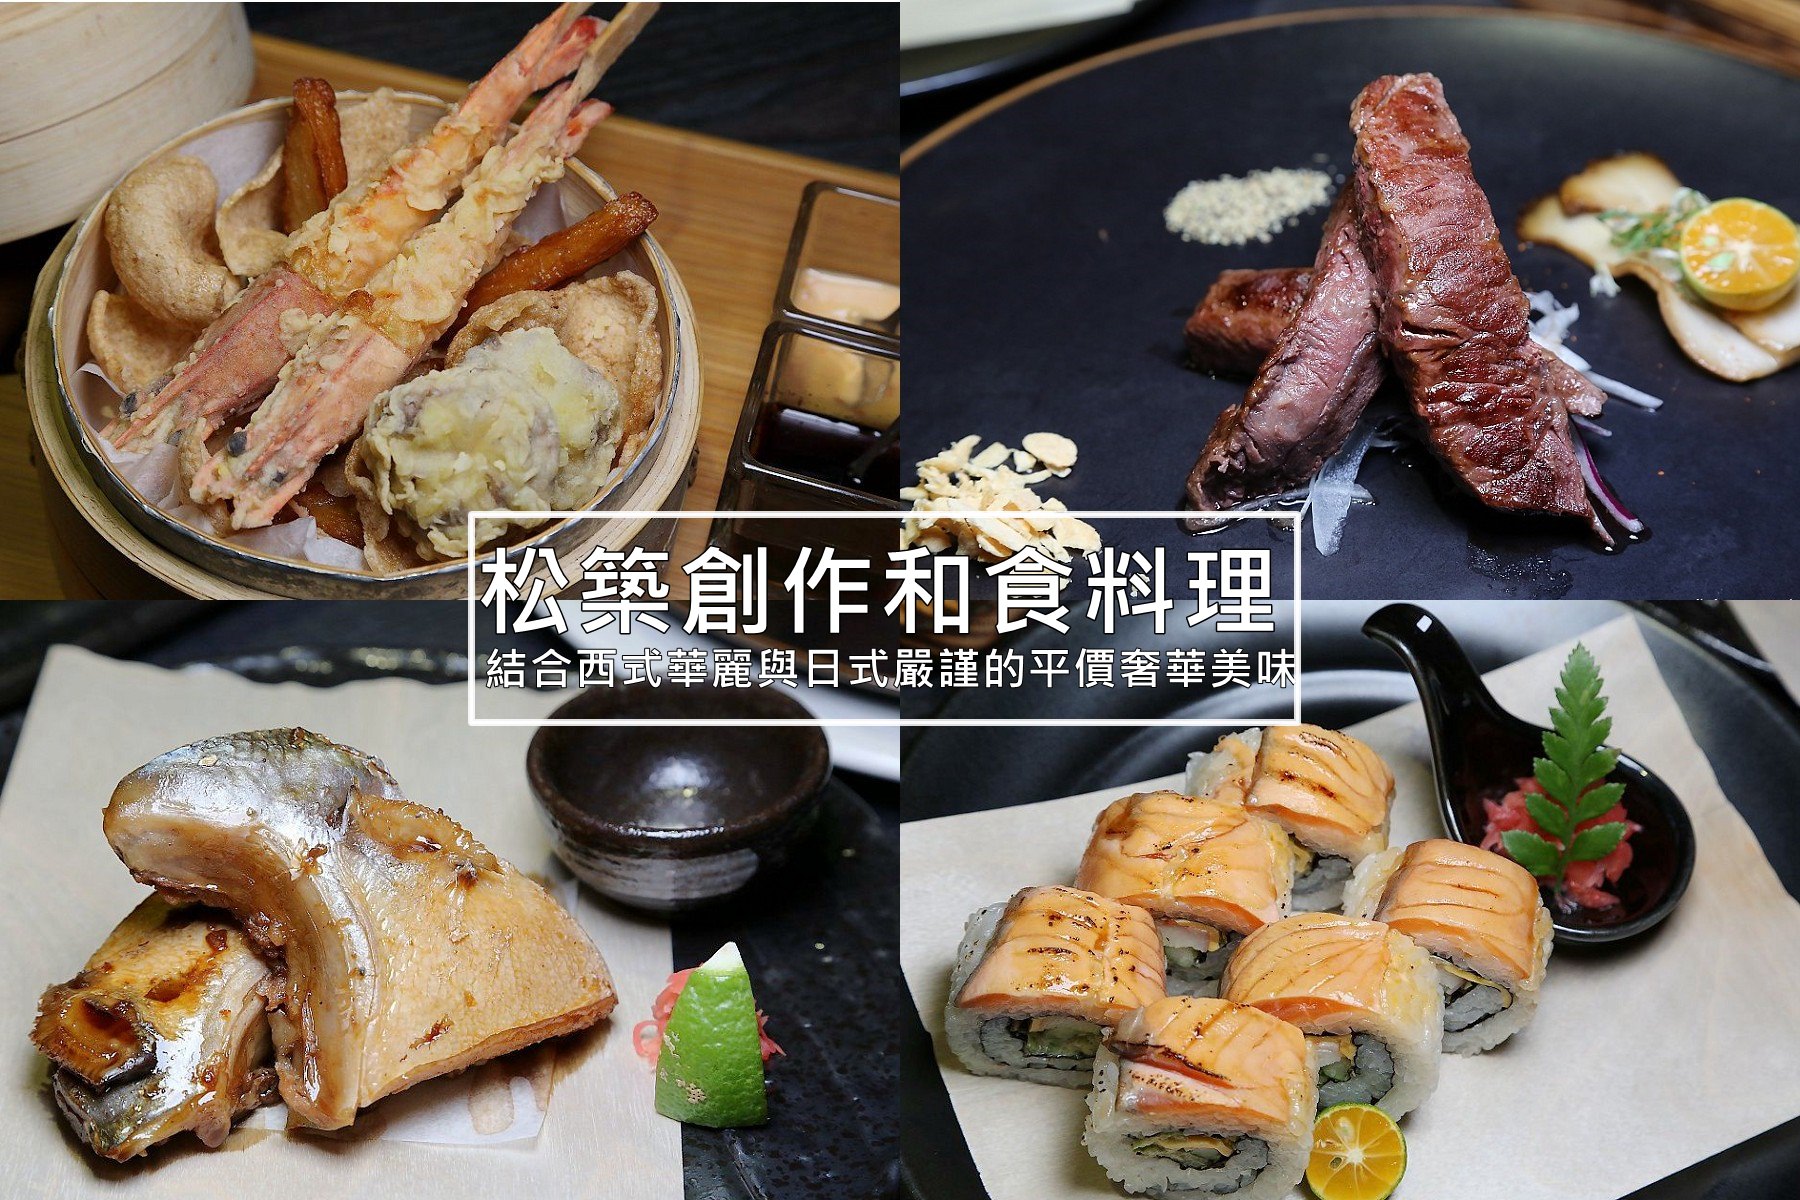 松築,嘉義日本料理,日本料理,嘉義美食